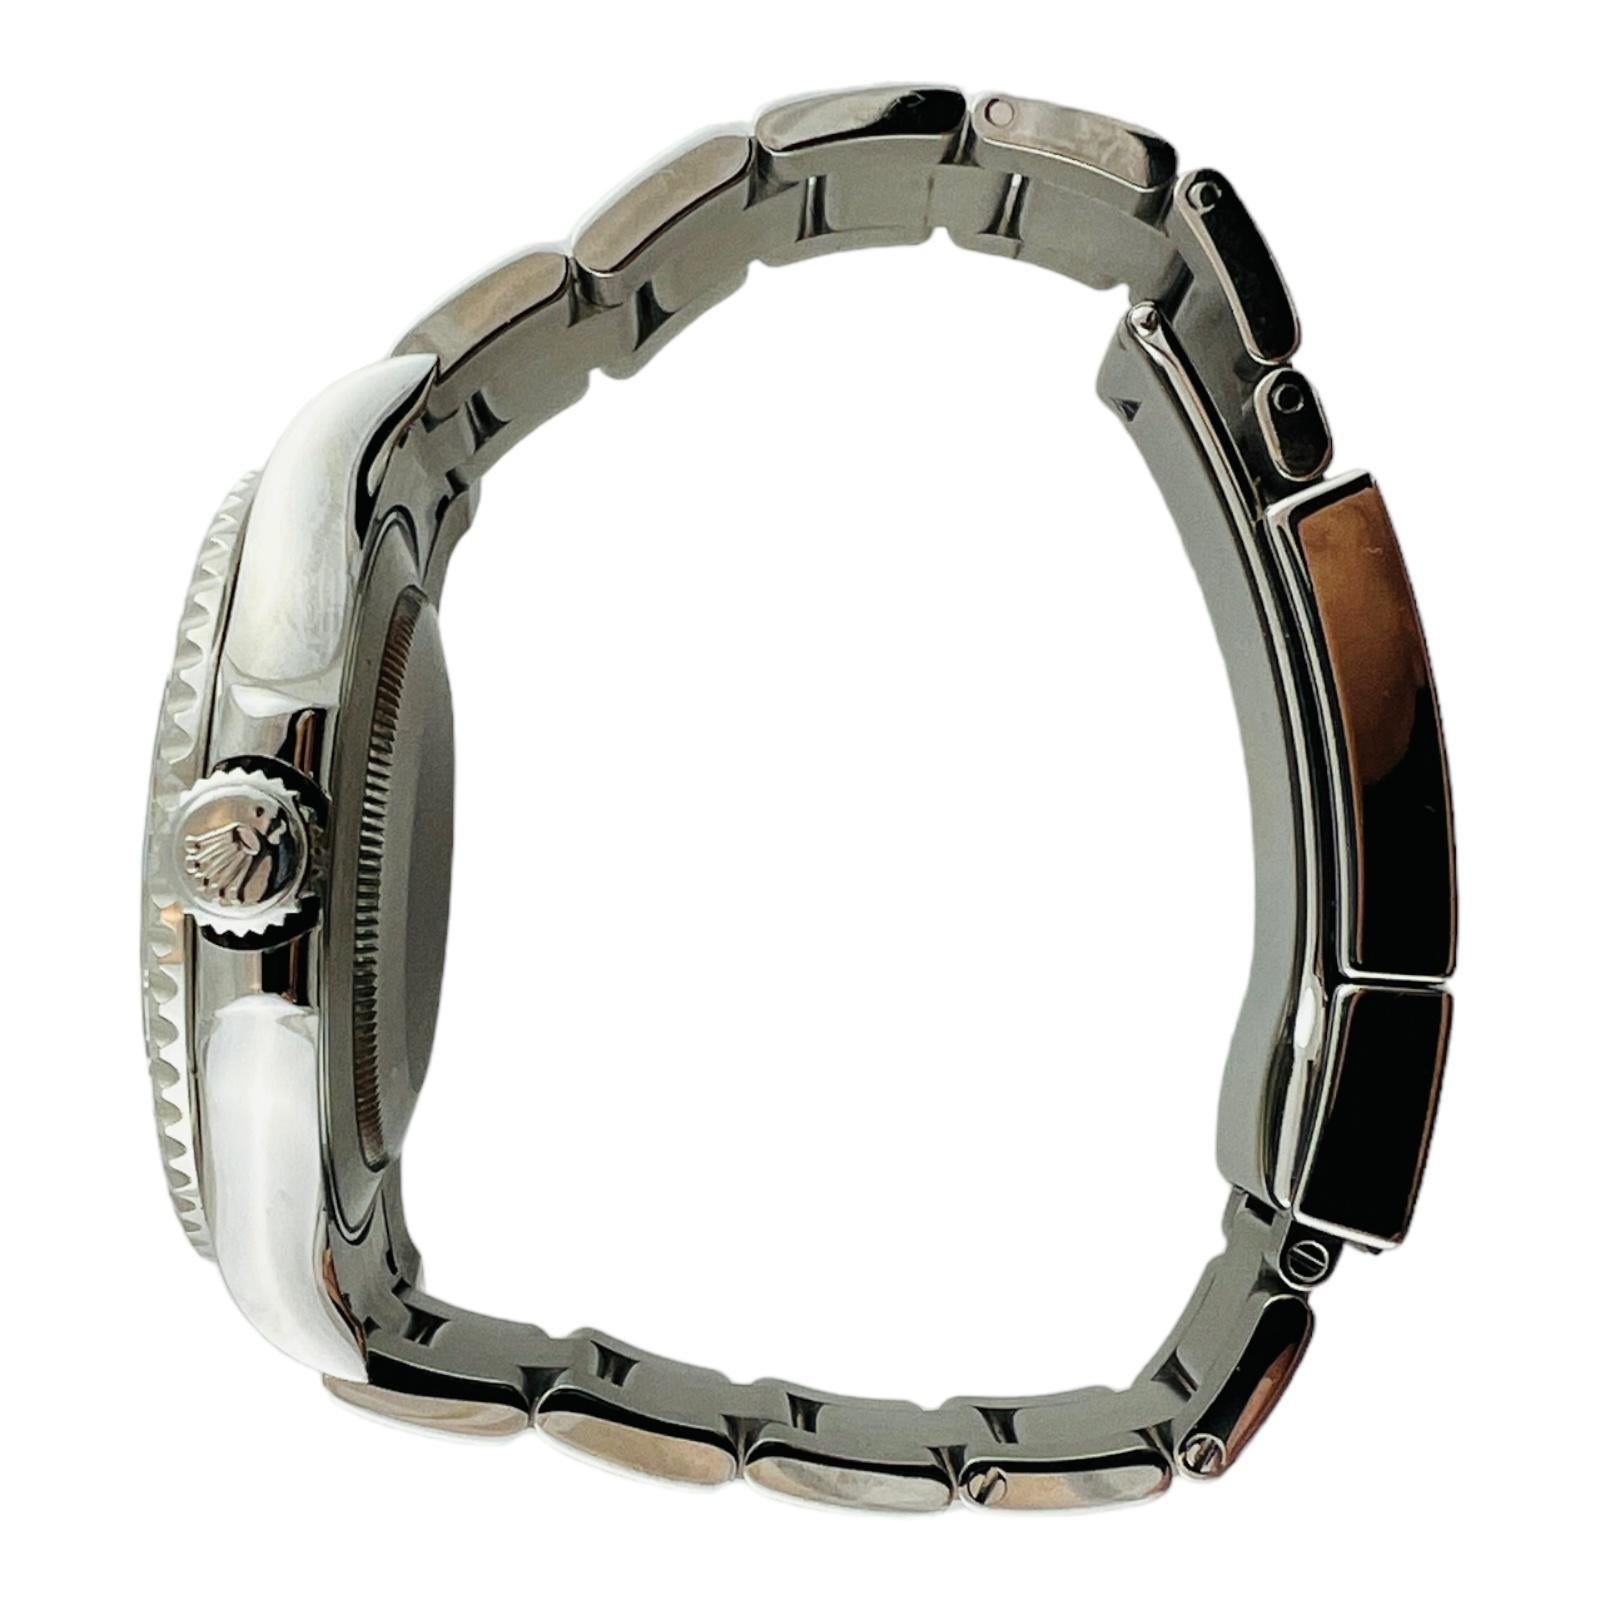 2022 Montre Rolex Yacht Master pour homme

Modèle : 116622
Série : OXA08788

Cette montre Rolex est sertie en acier inoxydable avec une lunette en platine

Boîtier de 40 mm

Mouvement automatique

Le bracelet est en excellent état, il n'est pas